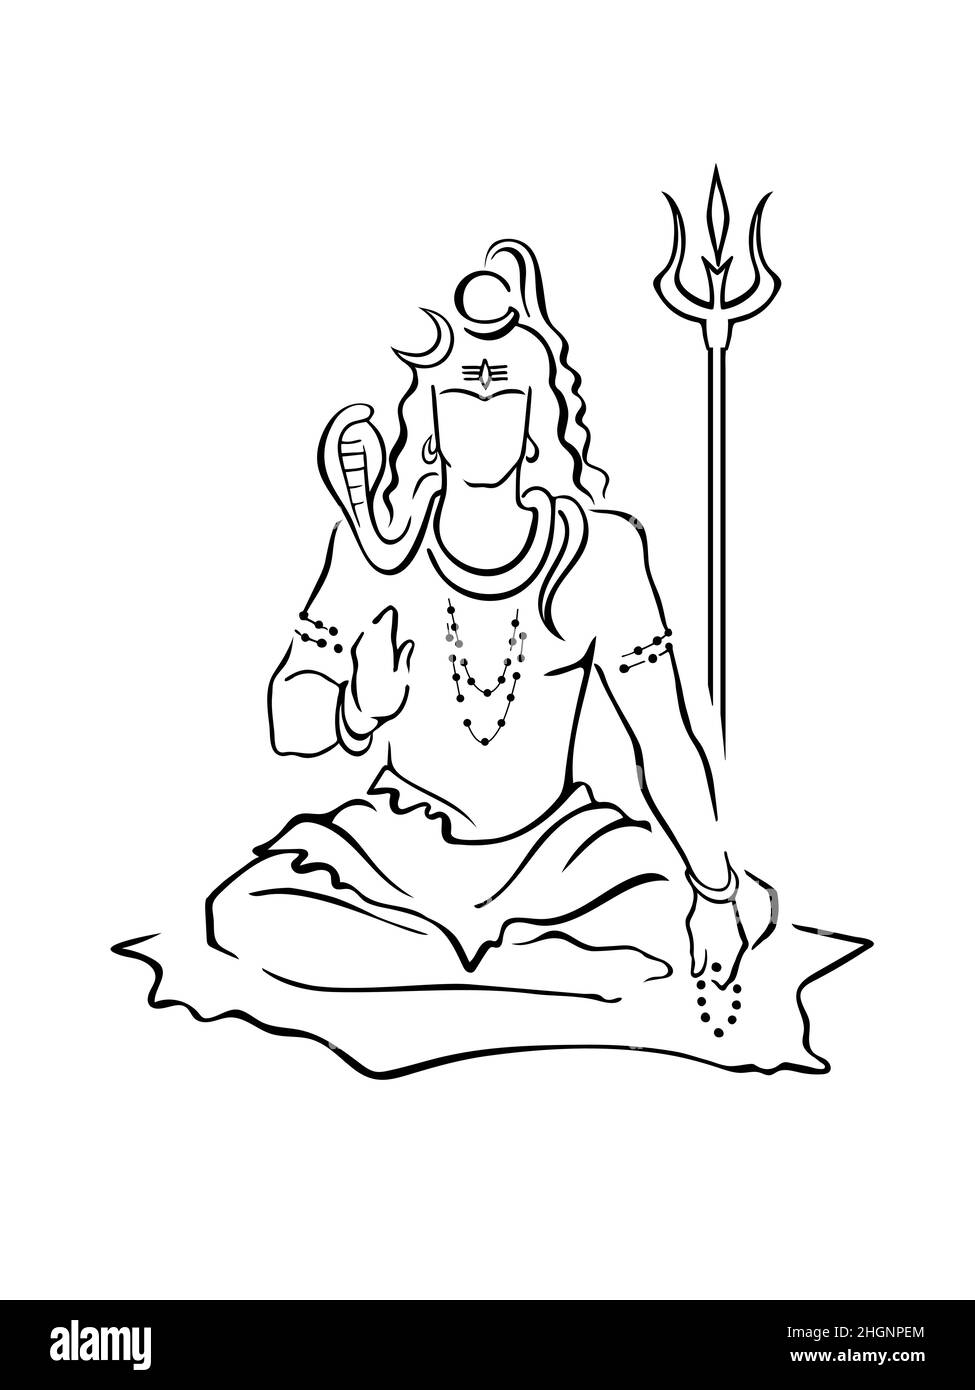 Shiva, dieu hindou, donnant la bénédiction, assis avec des perles, trident.Mahadeva, Dieu suprême de la destruction, du temps, de la danse, du yoga.Symbole moderne, ske dessiné à la main Illustration de Vecteur